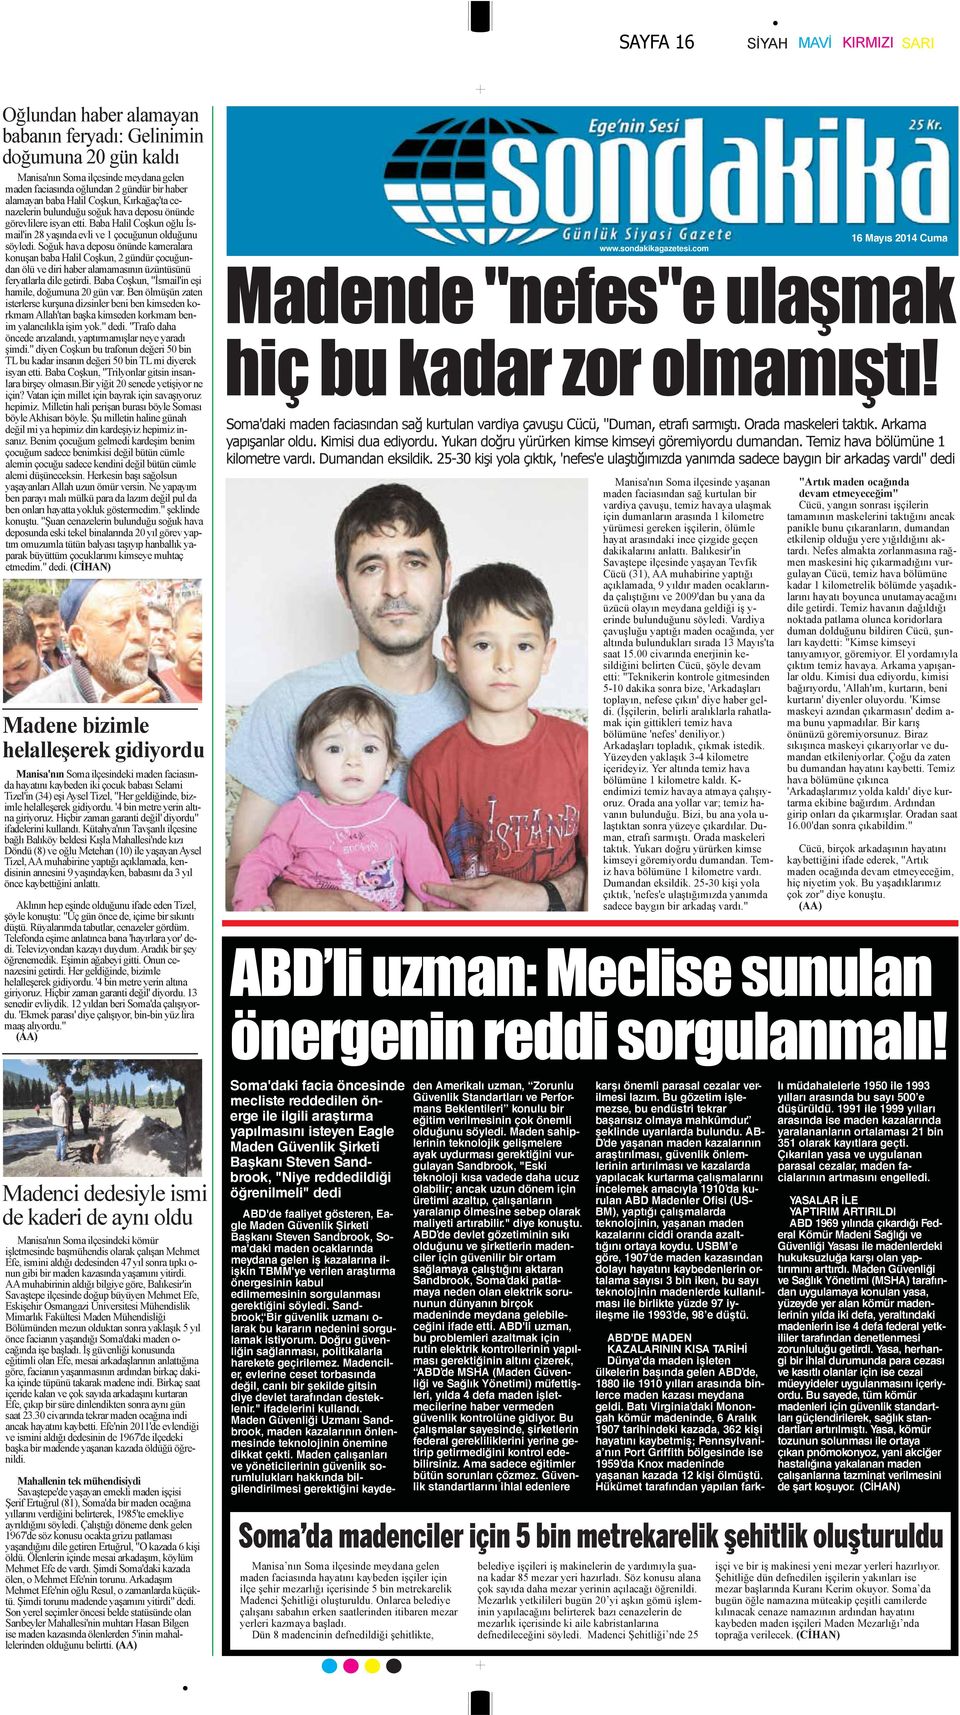 Soğuk hava deposu önünde kameralara konuşan baba Halil Coşkun, 2 gündür çocuğundan ölü ve diri haber alamamasının üzüntüsünü feryatlarla dile getirdi.